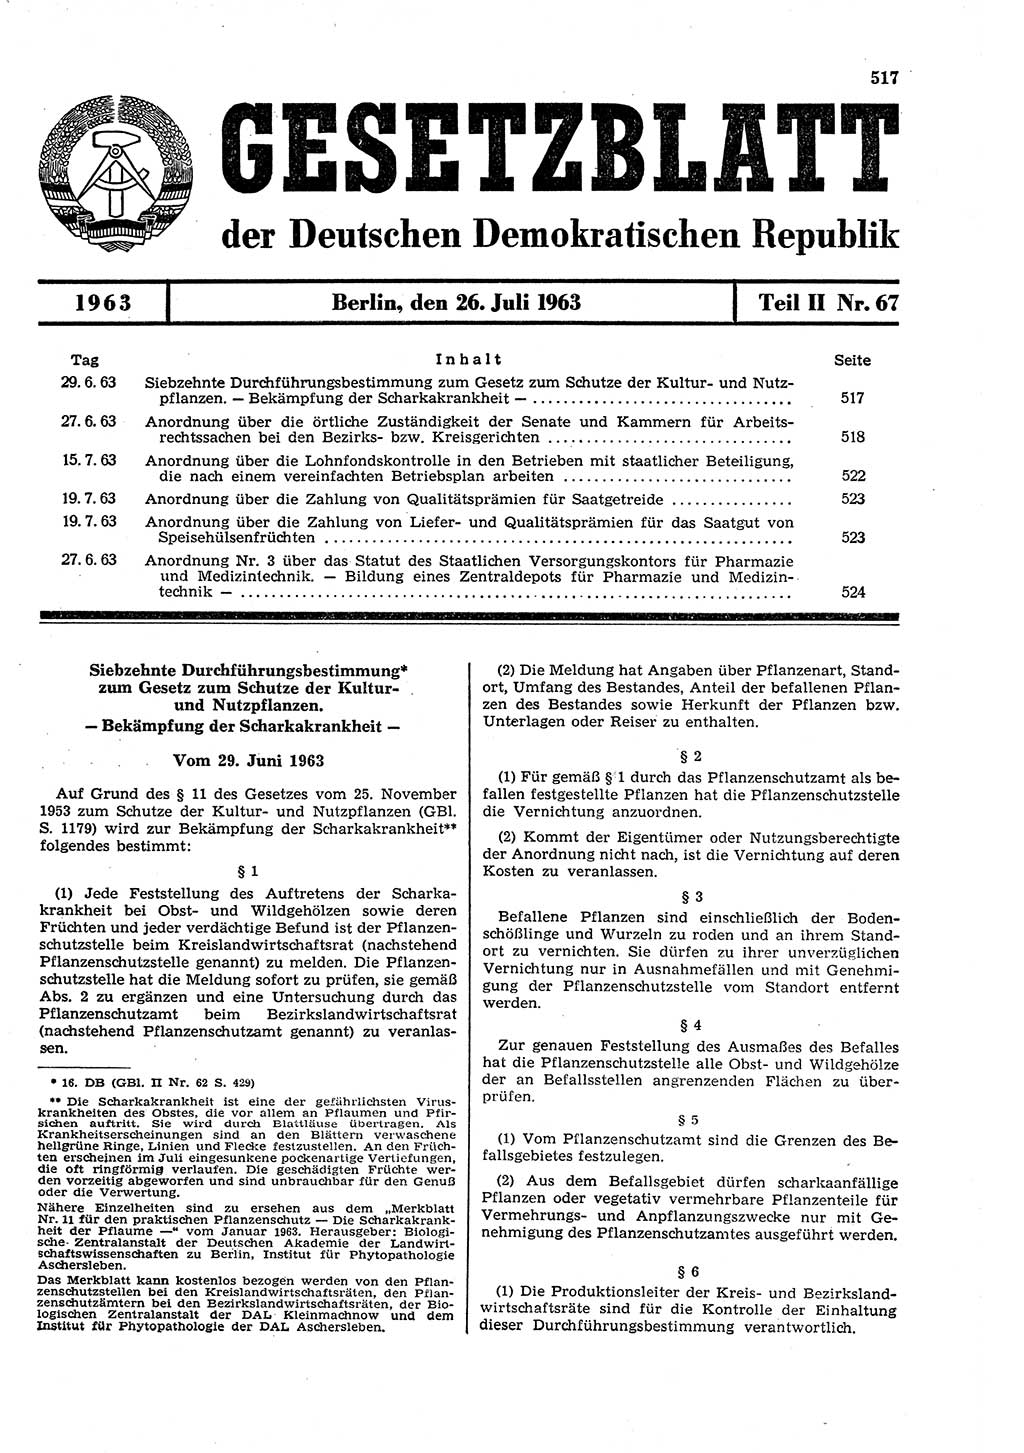 Gesetzblatt (GBl.) der Deutschen Demokratischen Republik (DDR) Teil ⅠⅠ 1963, Seite 517 (GBl. DDR ⅠⅠ 1963, S. 517)